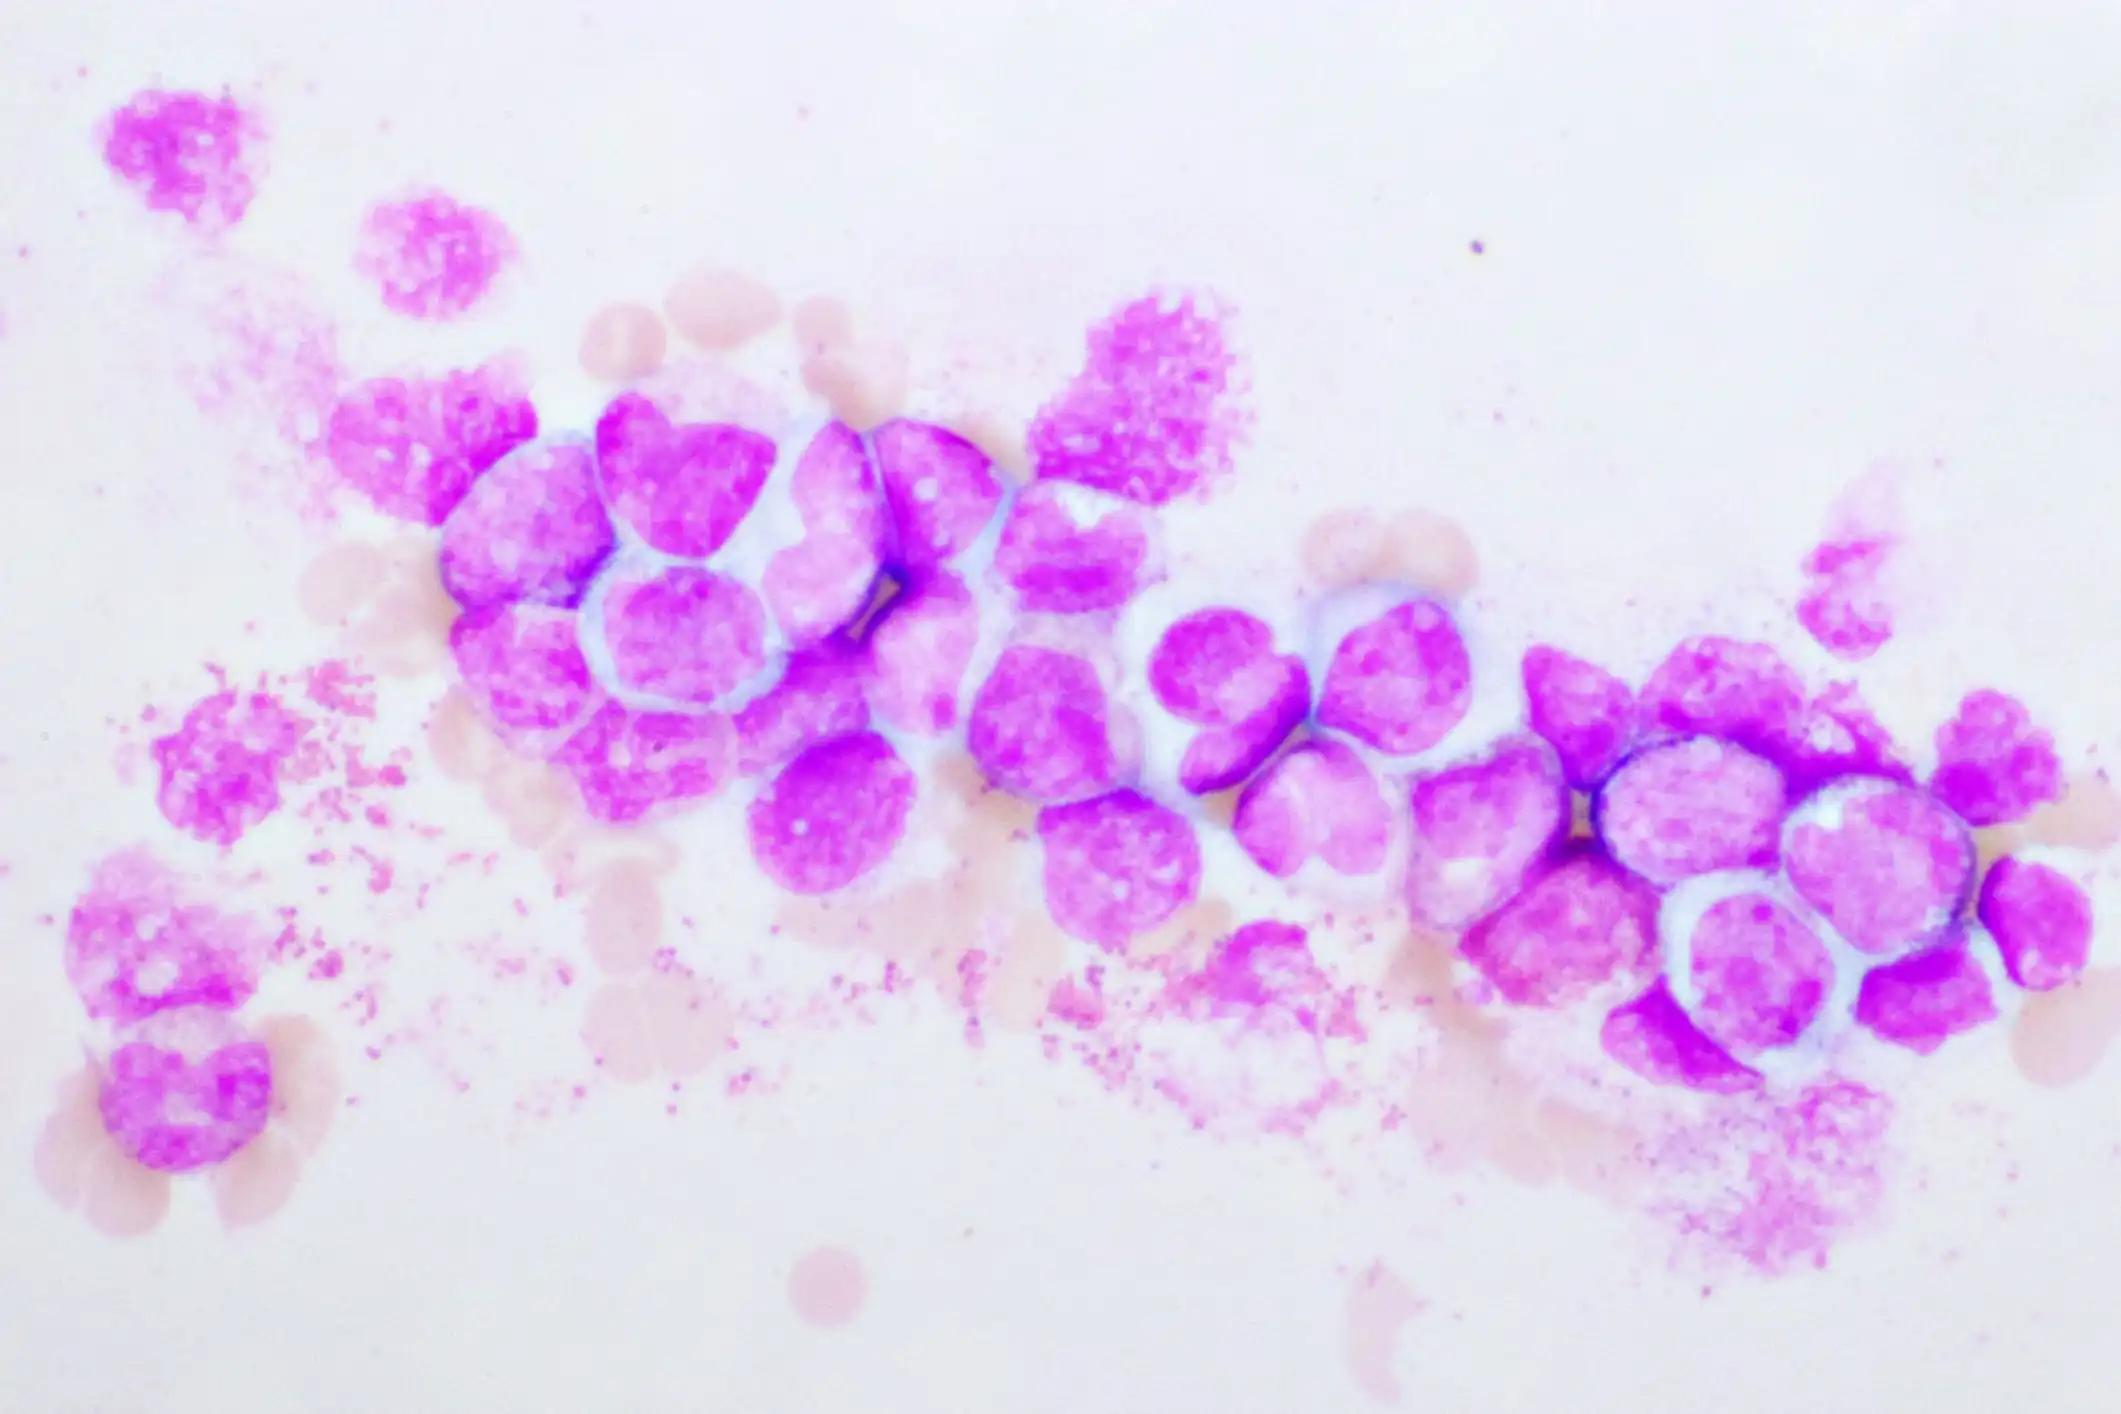 Chronic Myeloid Leukemia Cells or CML